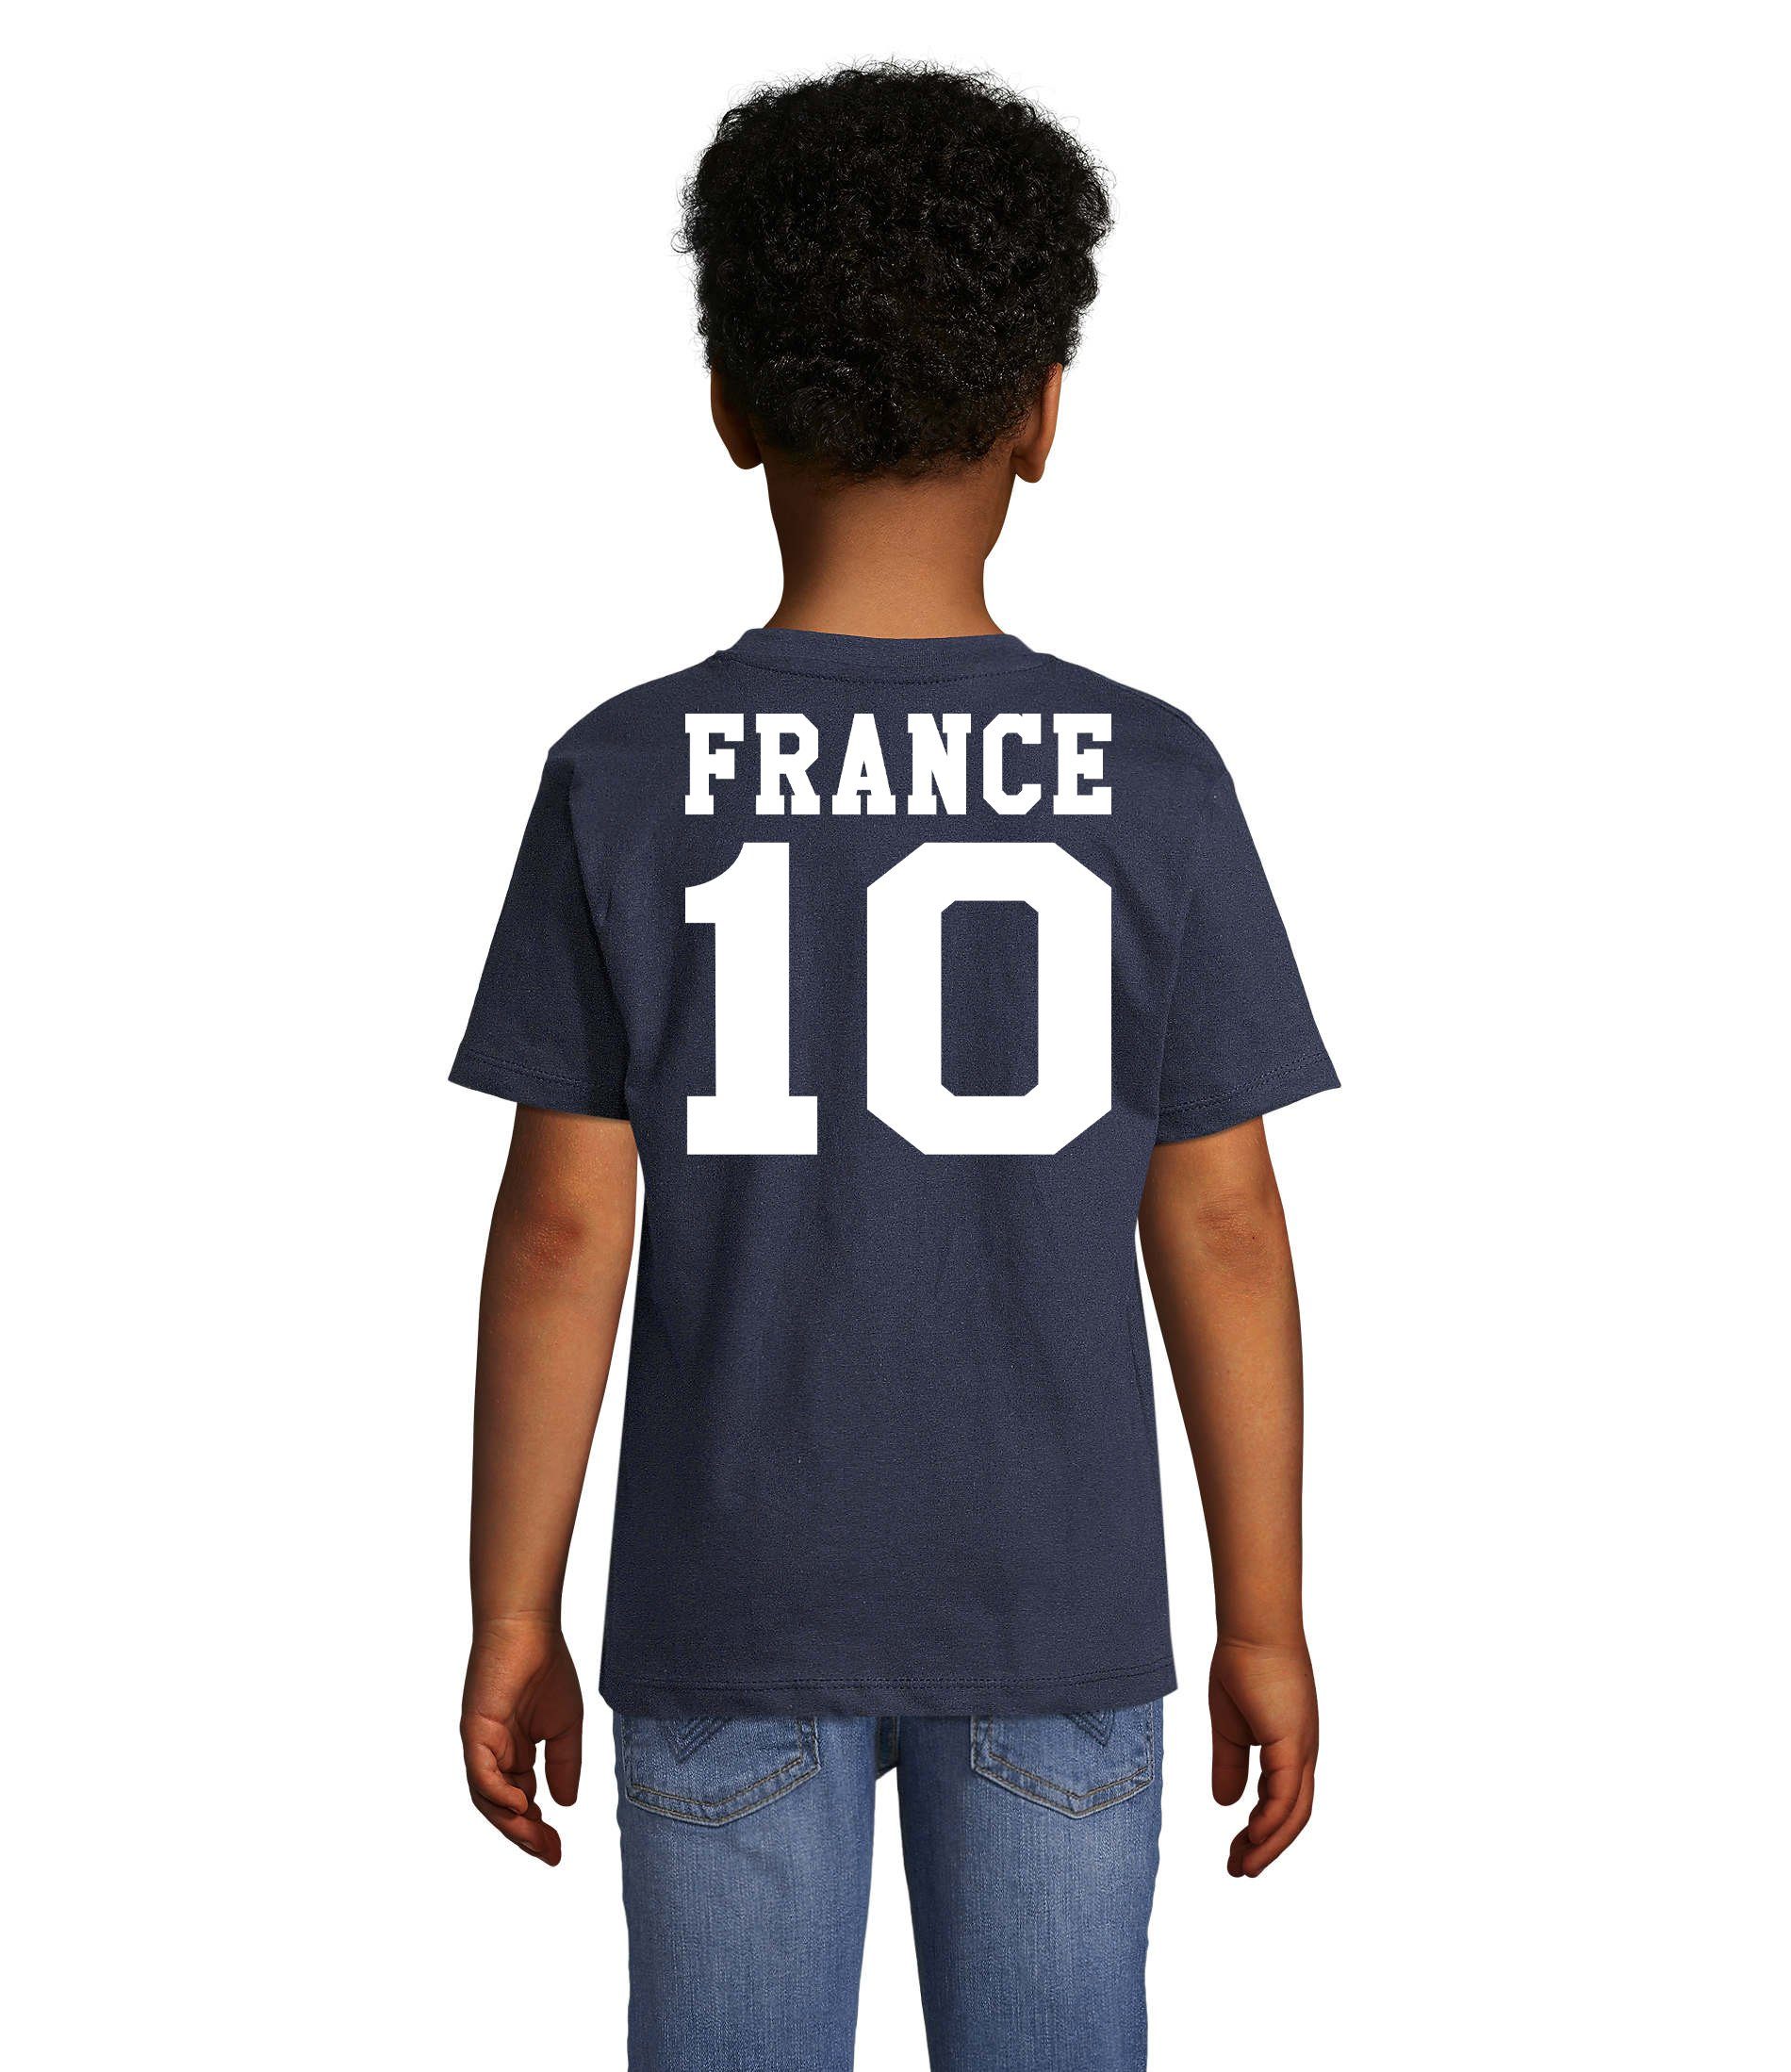 Blondie & Brownie EM Kinder Weltmeister Frankreich T-Shirt France Trikot Sport Fußball